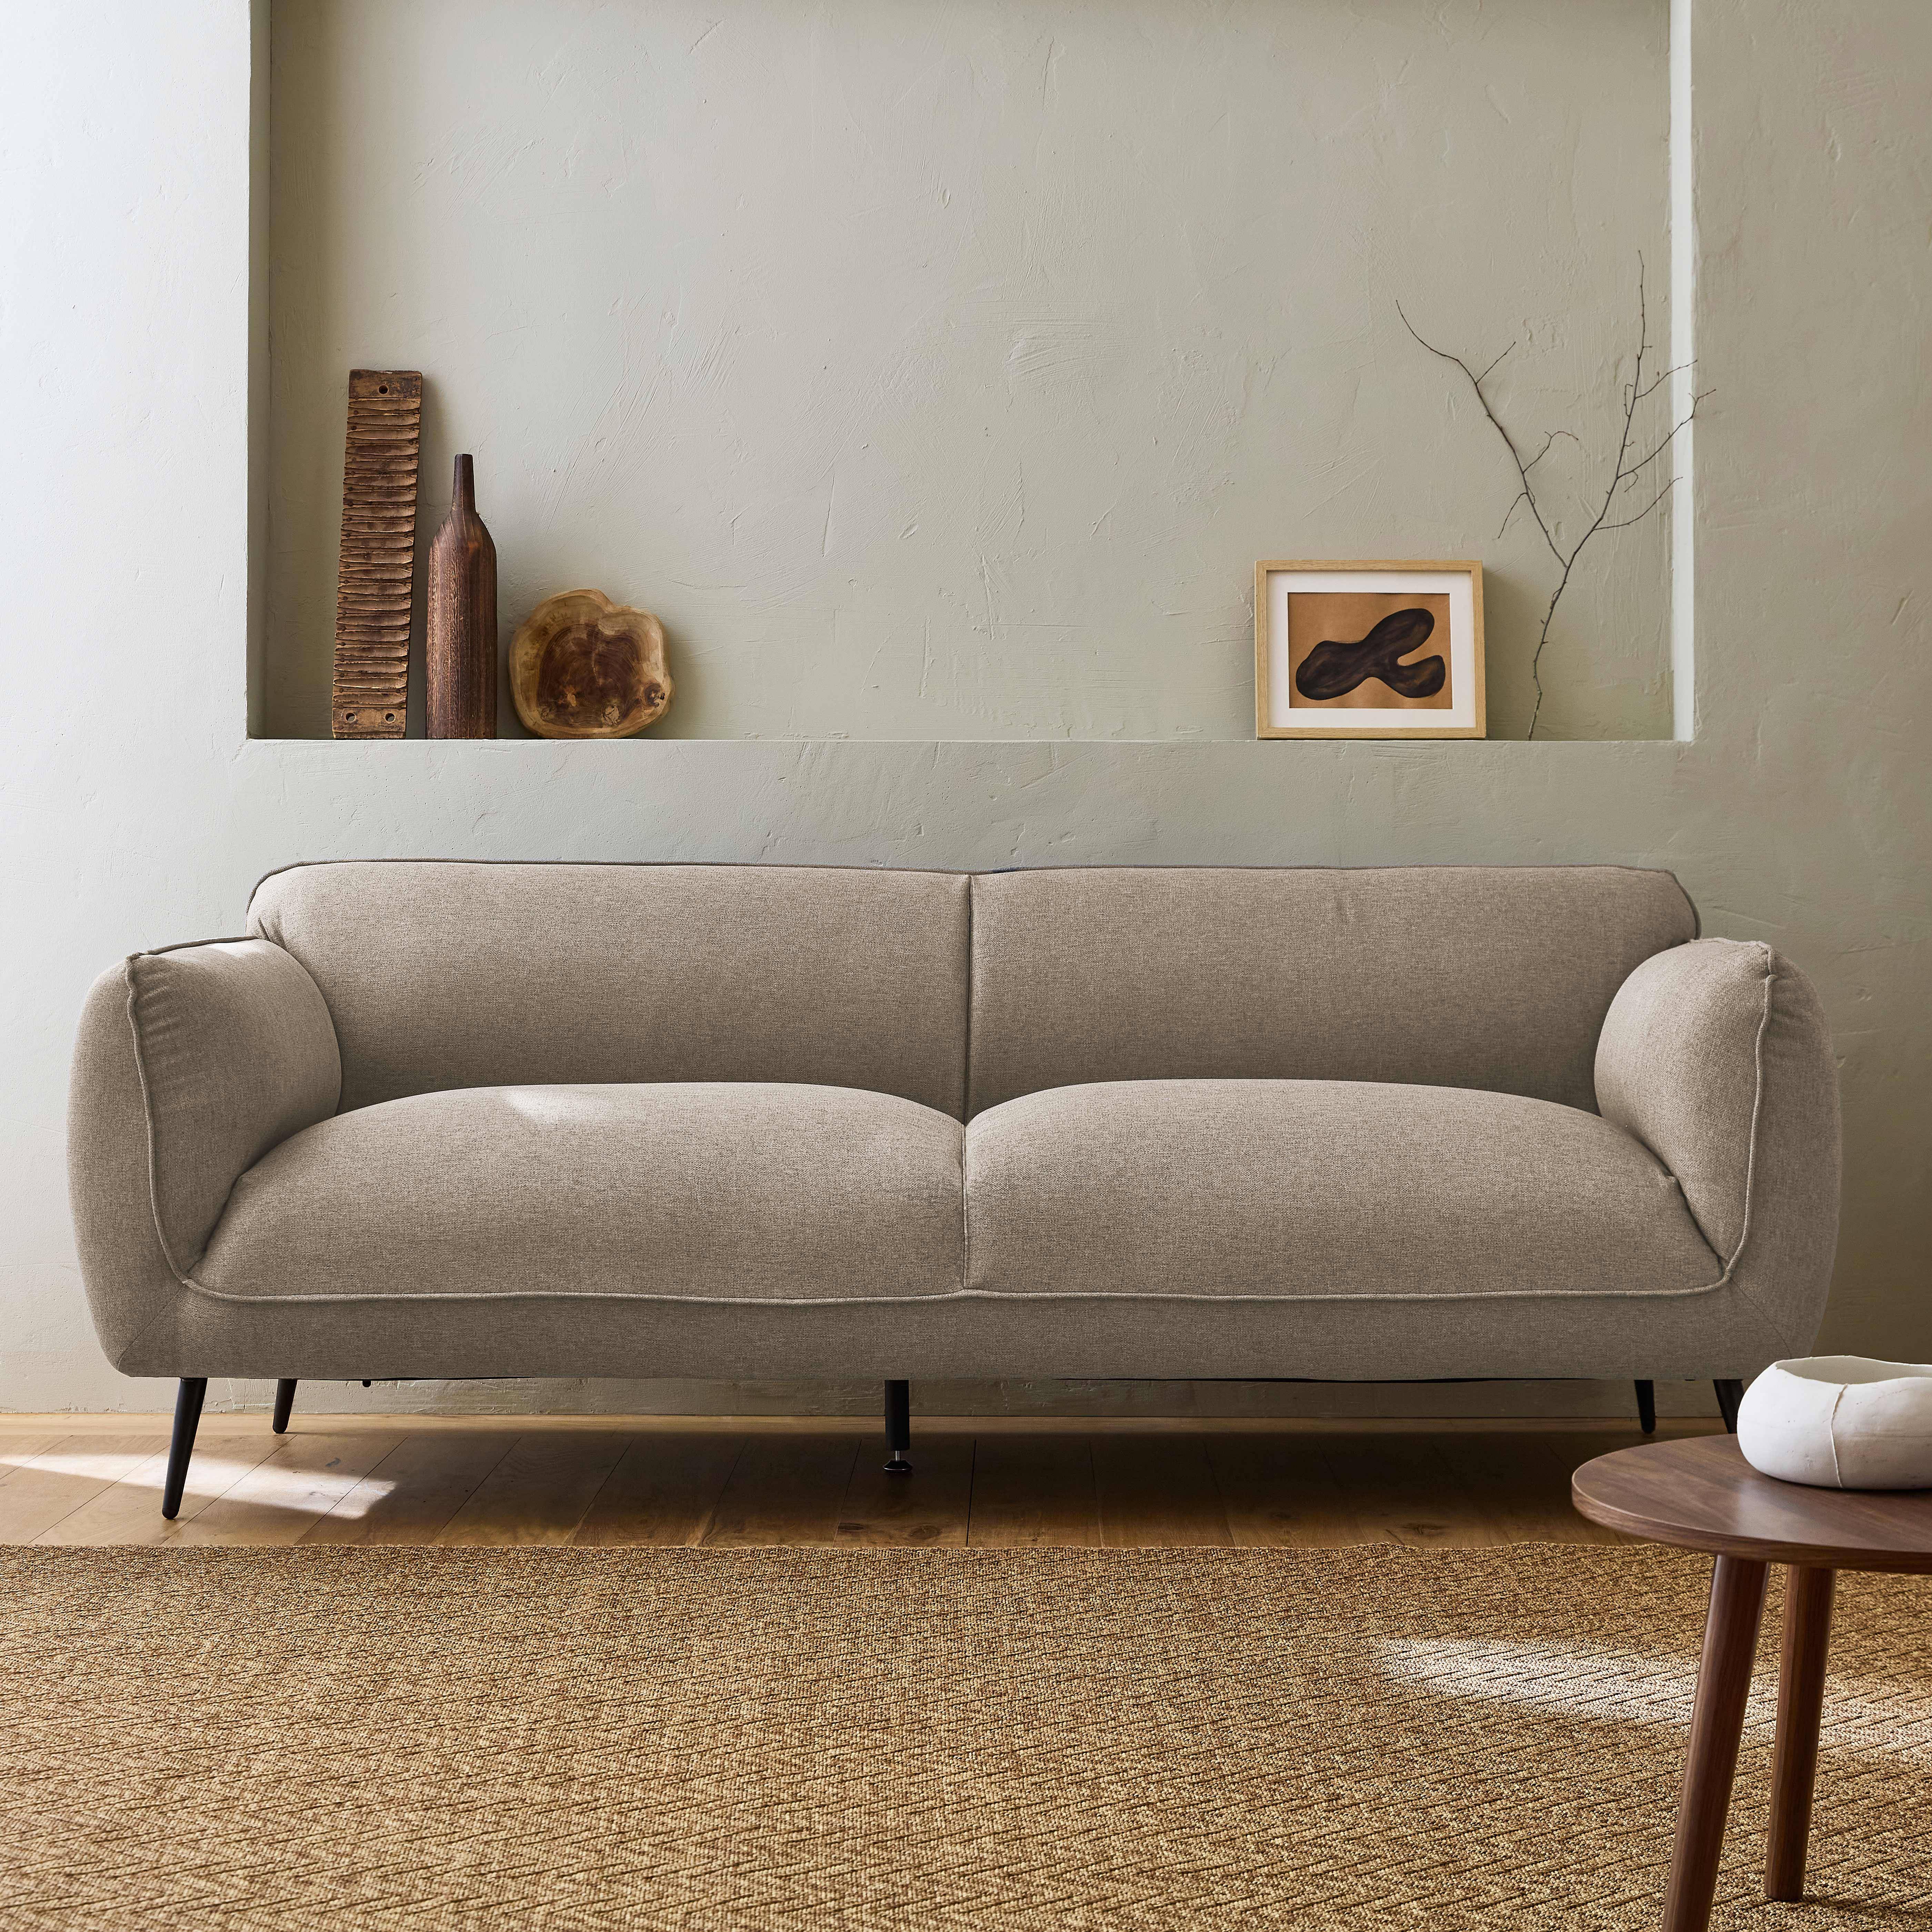 3-Sitzer-Sofa mit Stoffbezug in beige und schwarzen Metallfüßen - Soft,sweeek,Photo1